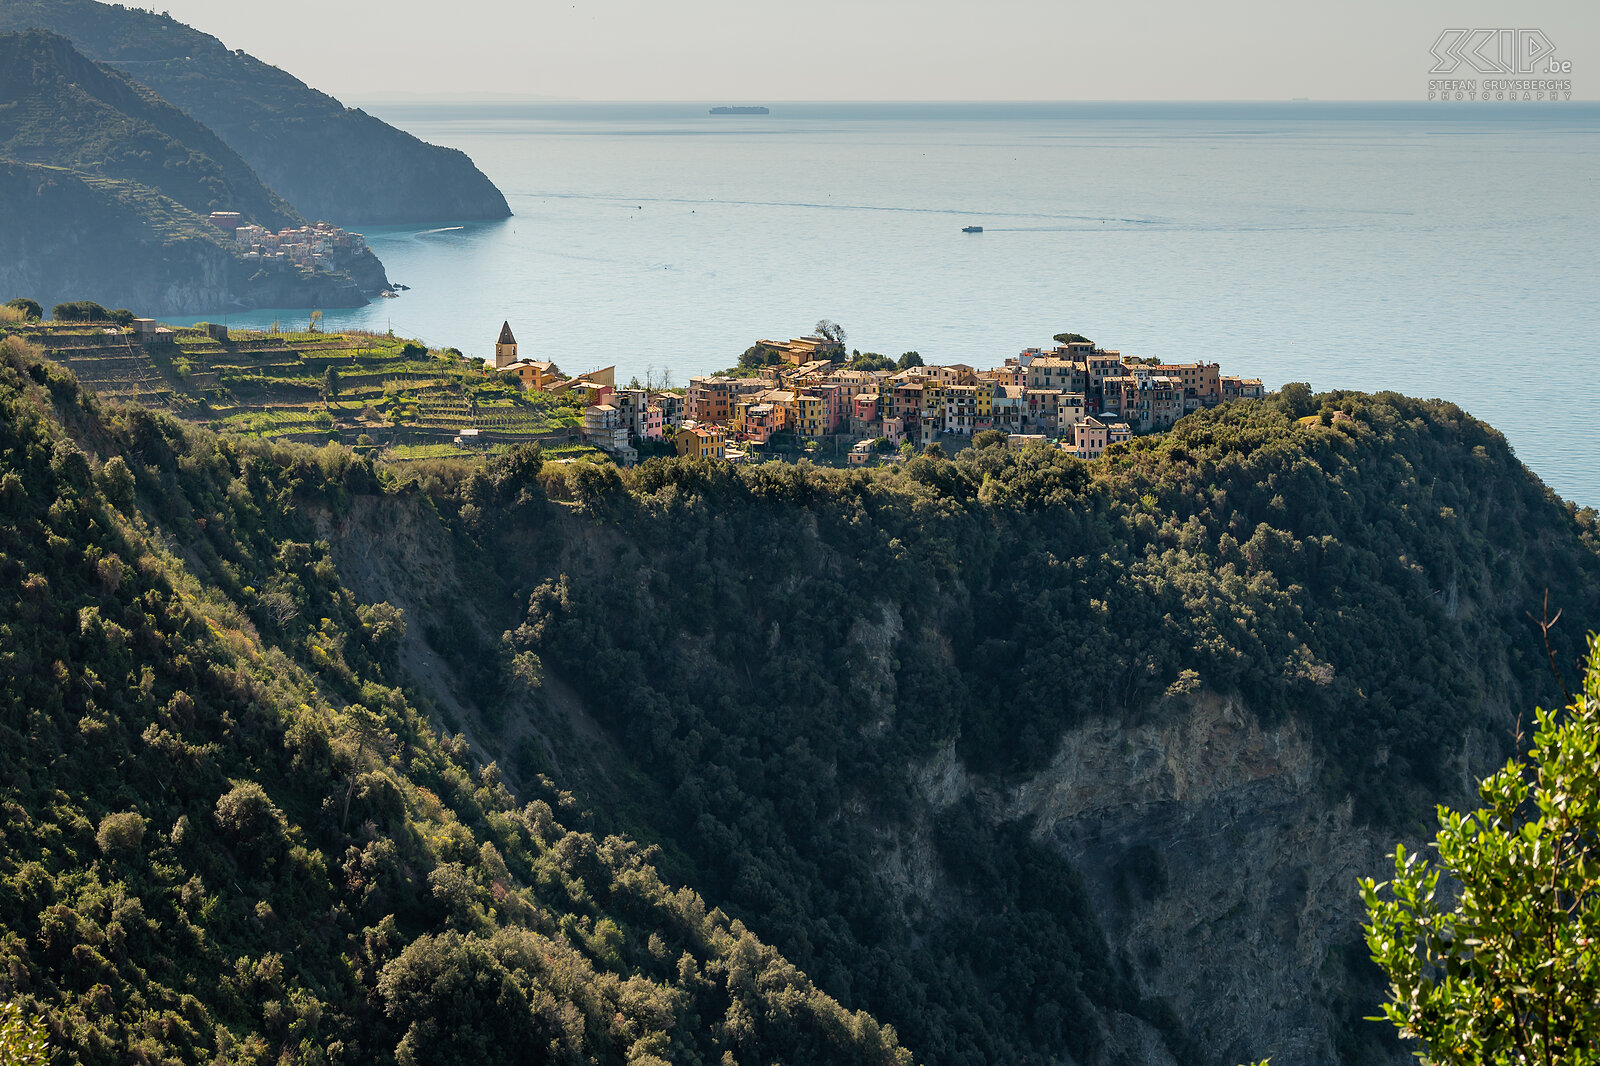 Corniglia Corniglia is het centrale dorp van de Cinque Terre maar het ligt op ongeveer 100m hoogte en heeft geen toegang tot de zee. Rond het dorp liggen vele wijngaarden en wandelpaden. We trokken er met de trein naartoe om nadien terug te wandelen langs de kust tot in Vernazza. Stefan Cruysberghs